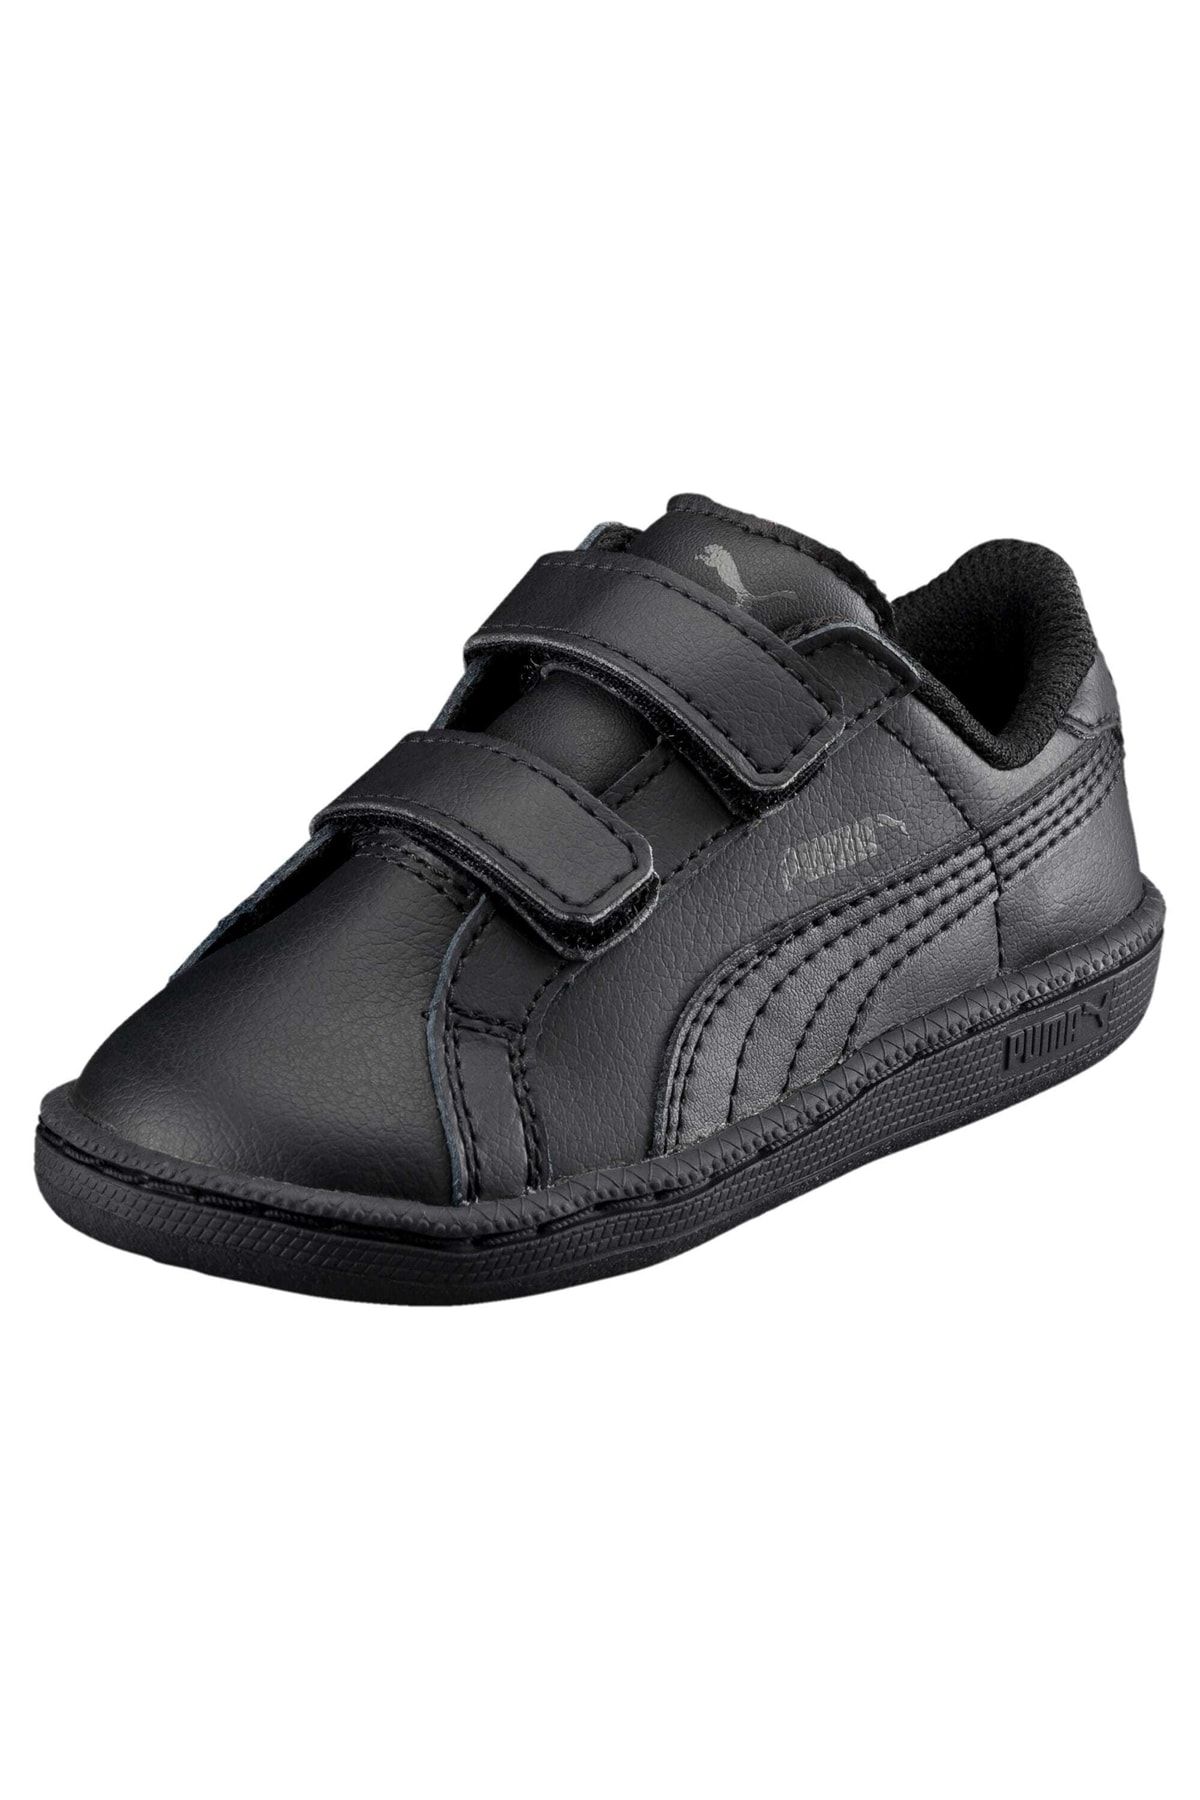 Puma Smash Leather Trendyol - Kids Shoes V